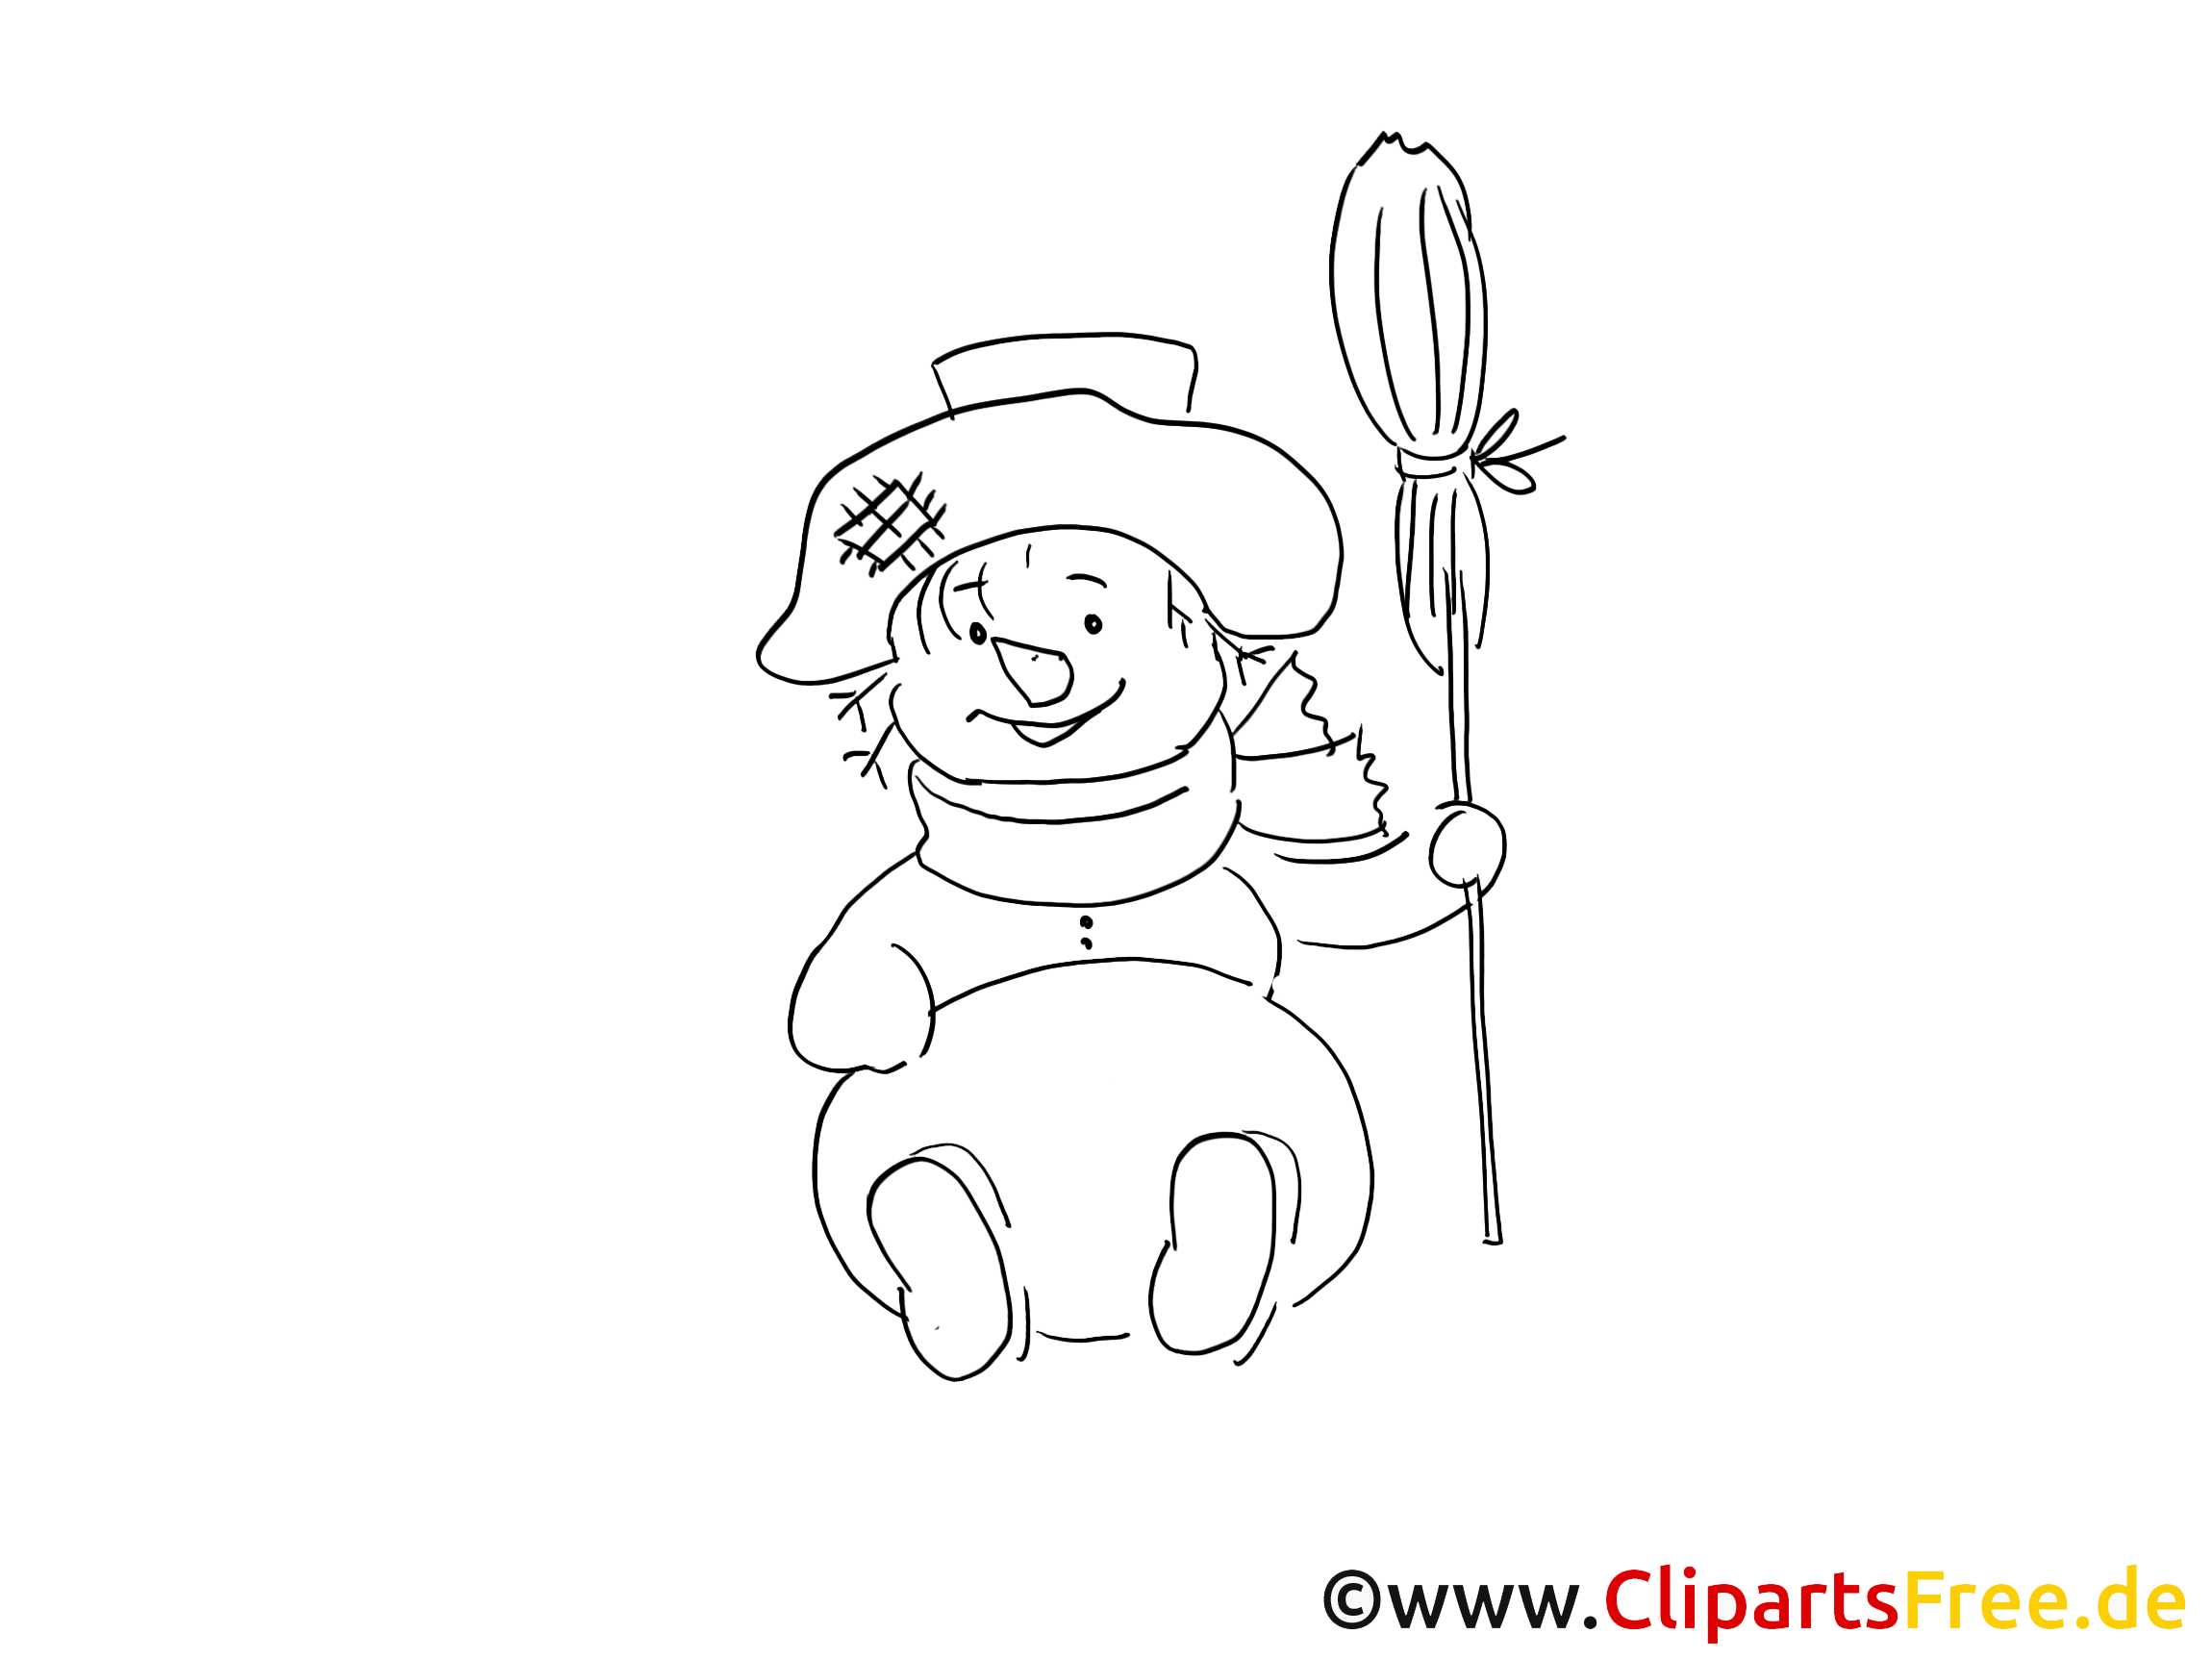 Clipart à colorier bonhomme de neige - Hiver dessins